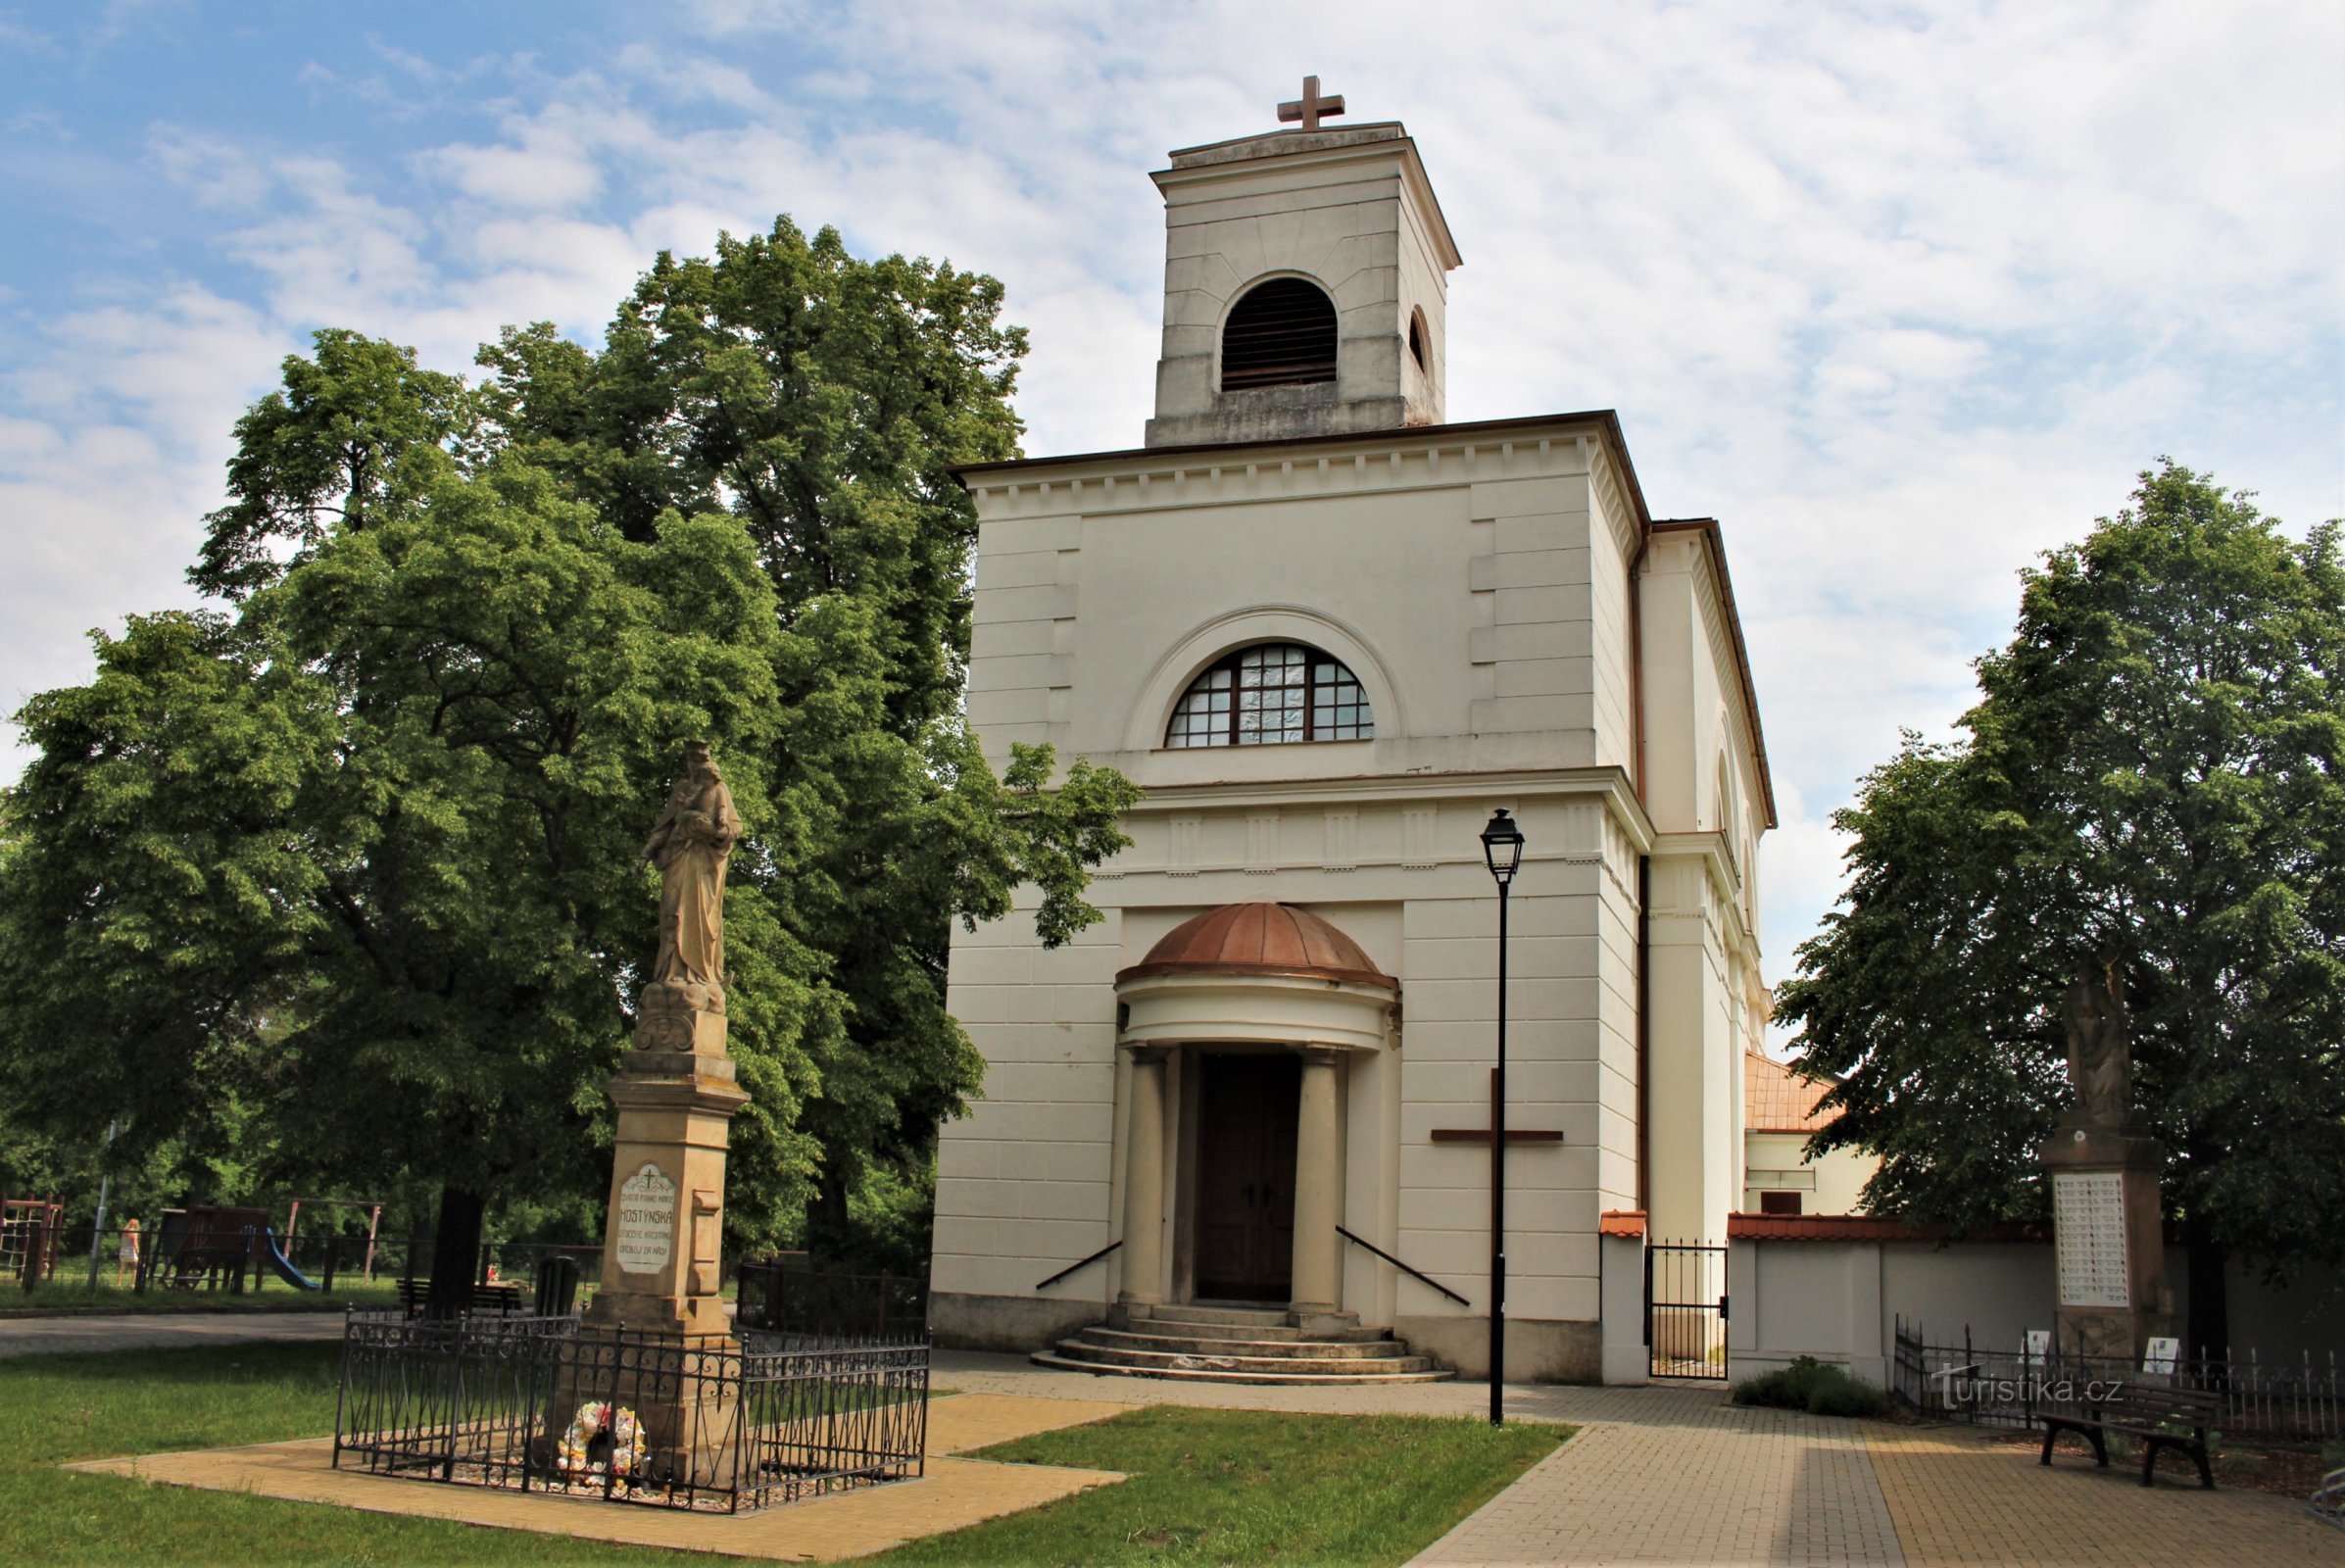 Hlohovec - church of St. Bartholomew